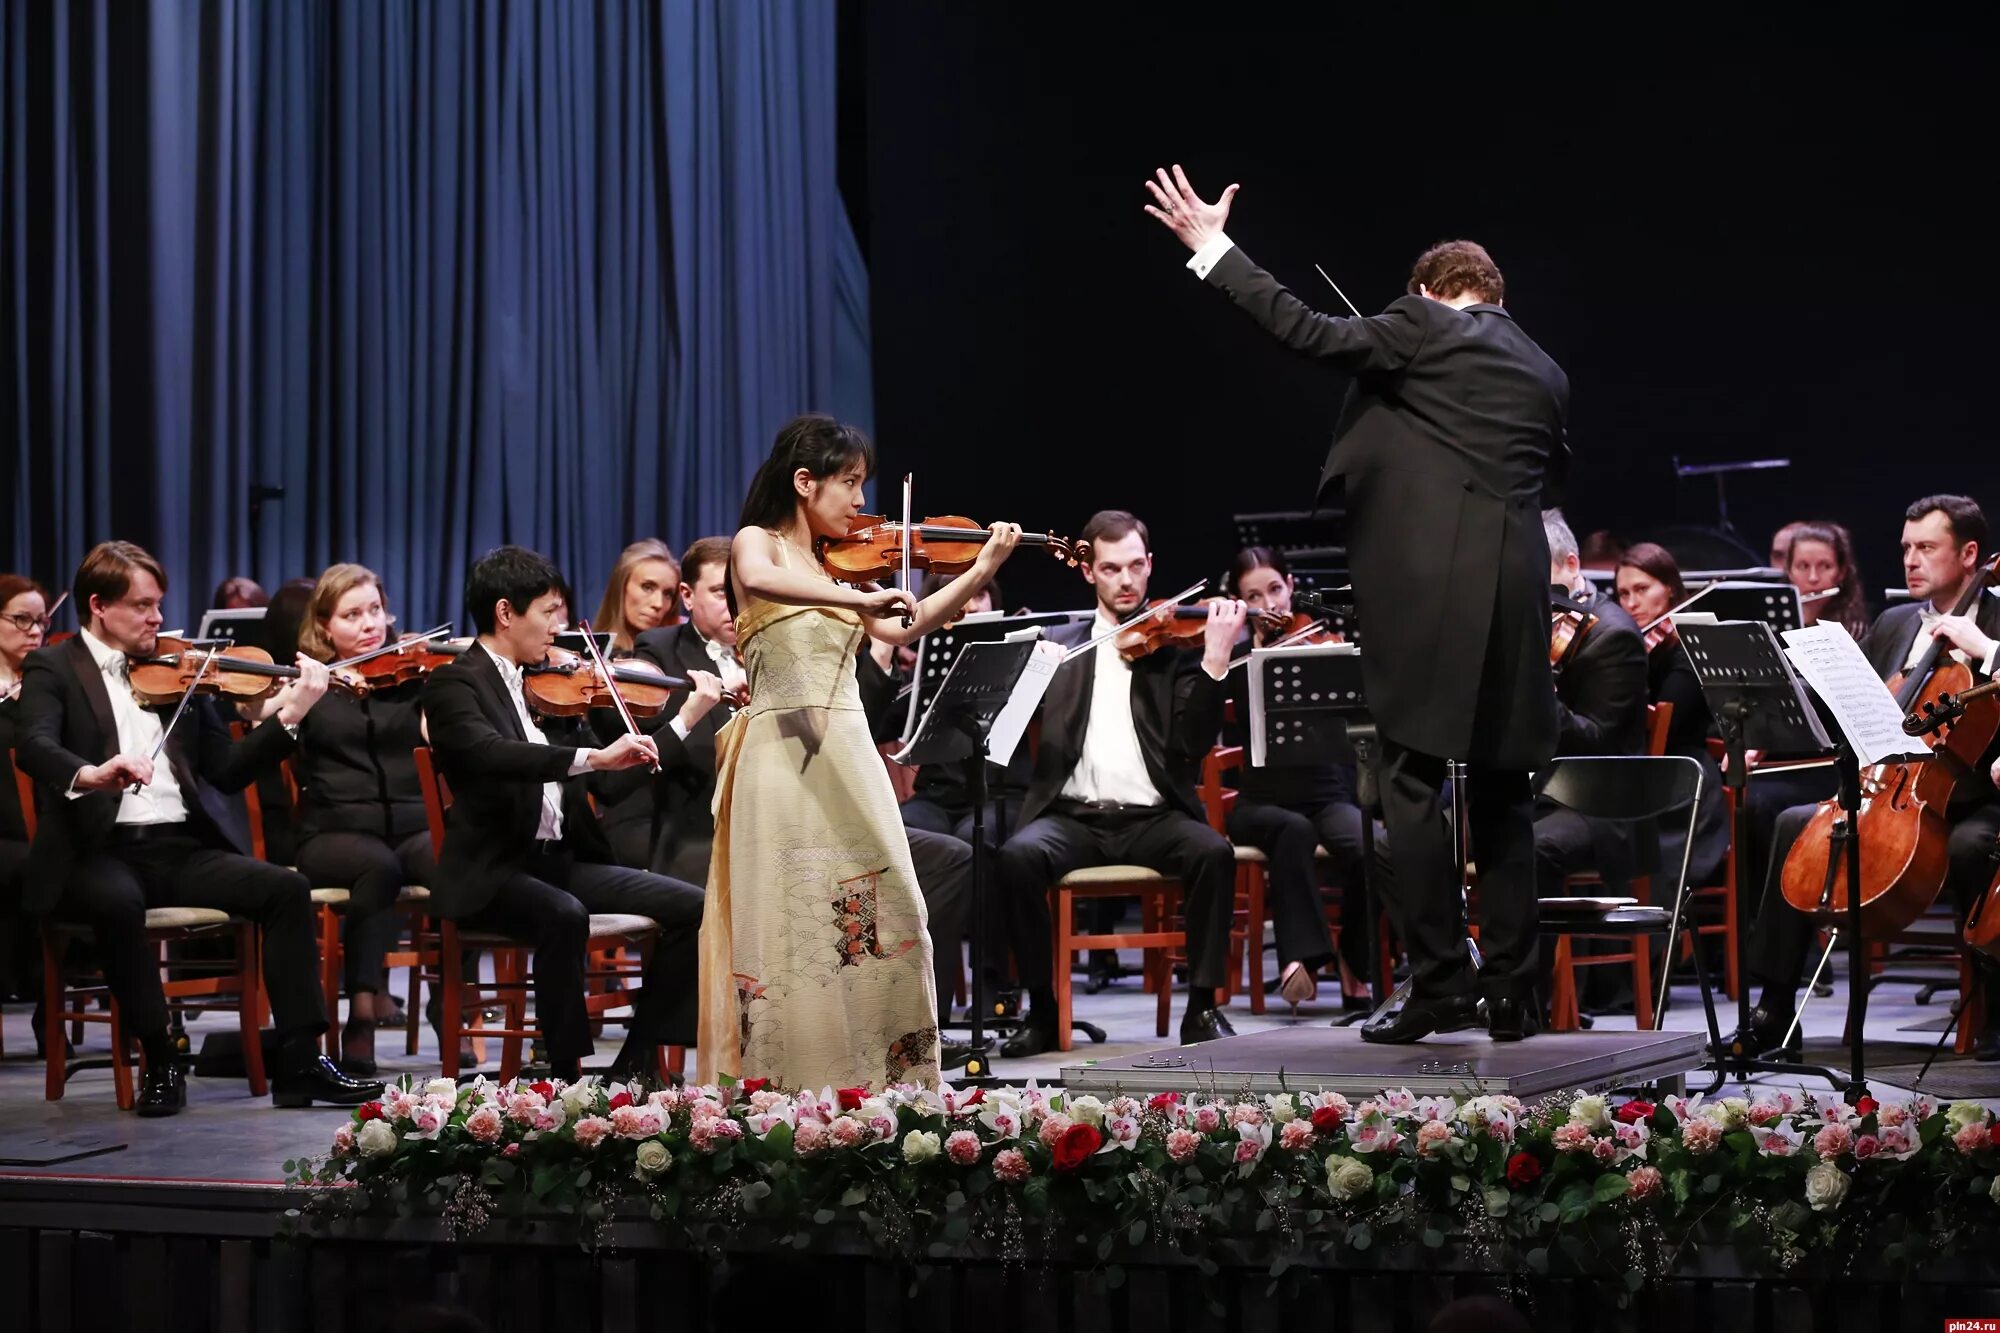 Скрипачка оркестра. Концерт Соната Увертюра симфония. Концерт оркестра Римского -Корсакова в Астраханской филармонии. Концерт для скрипки с оркестром.